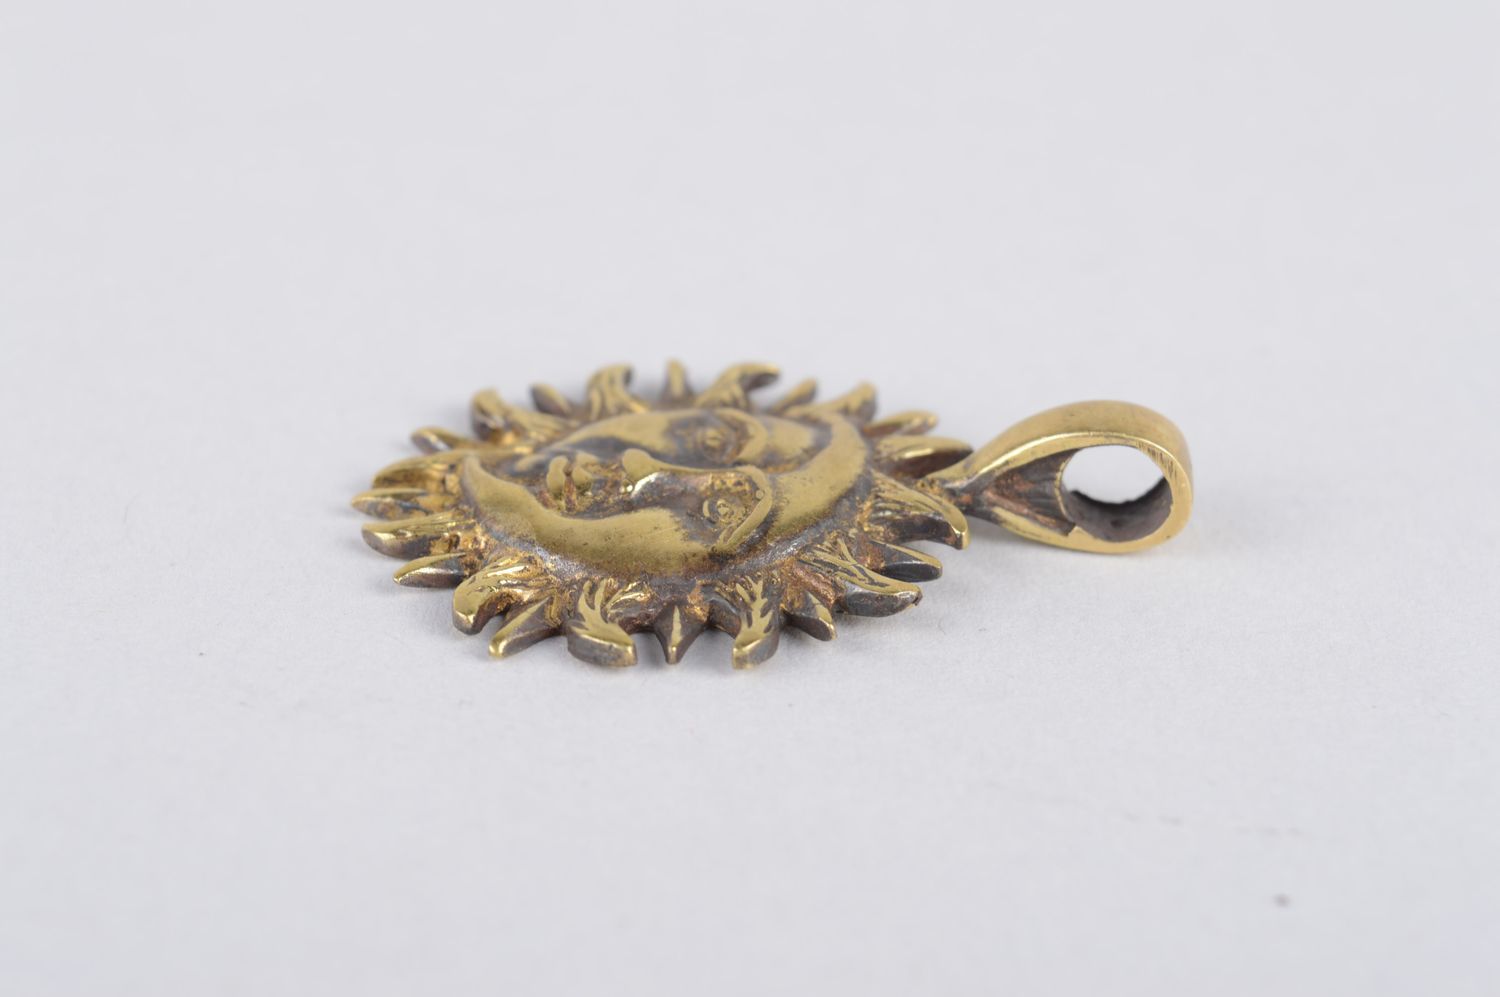 Handmade bronze jewelry metal pendant for women metal pendant bronze accessories photo 3